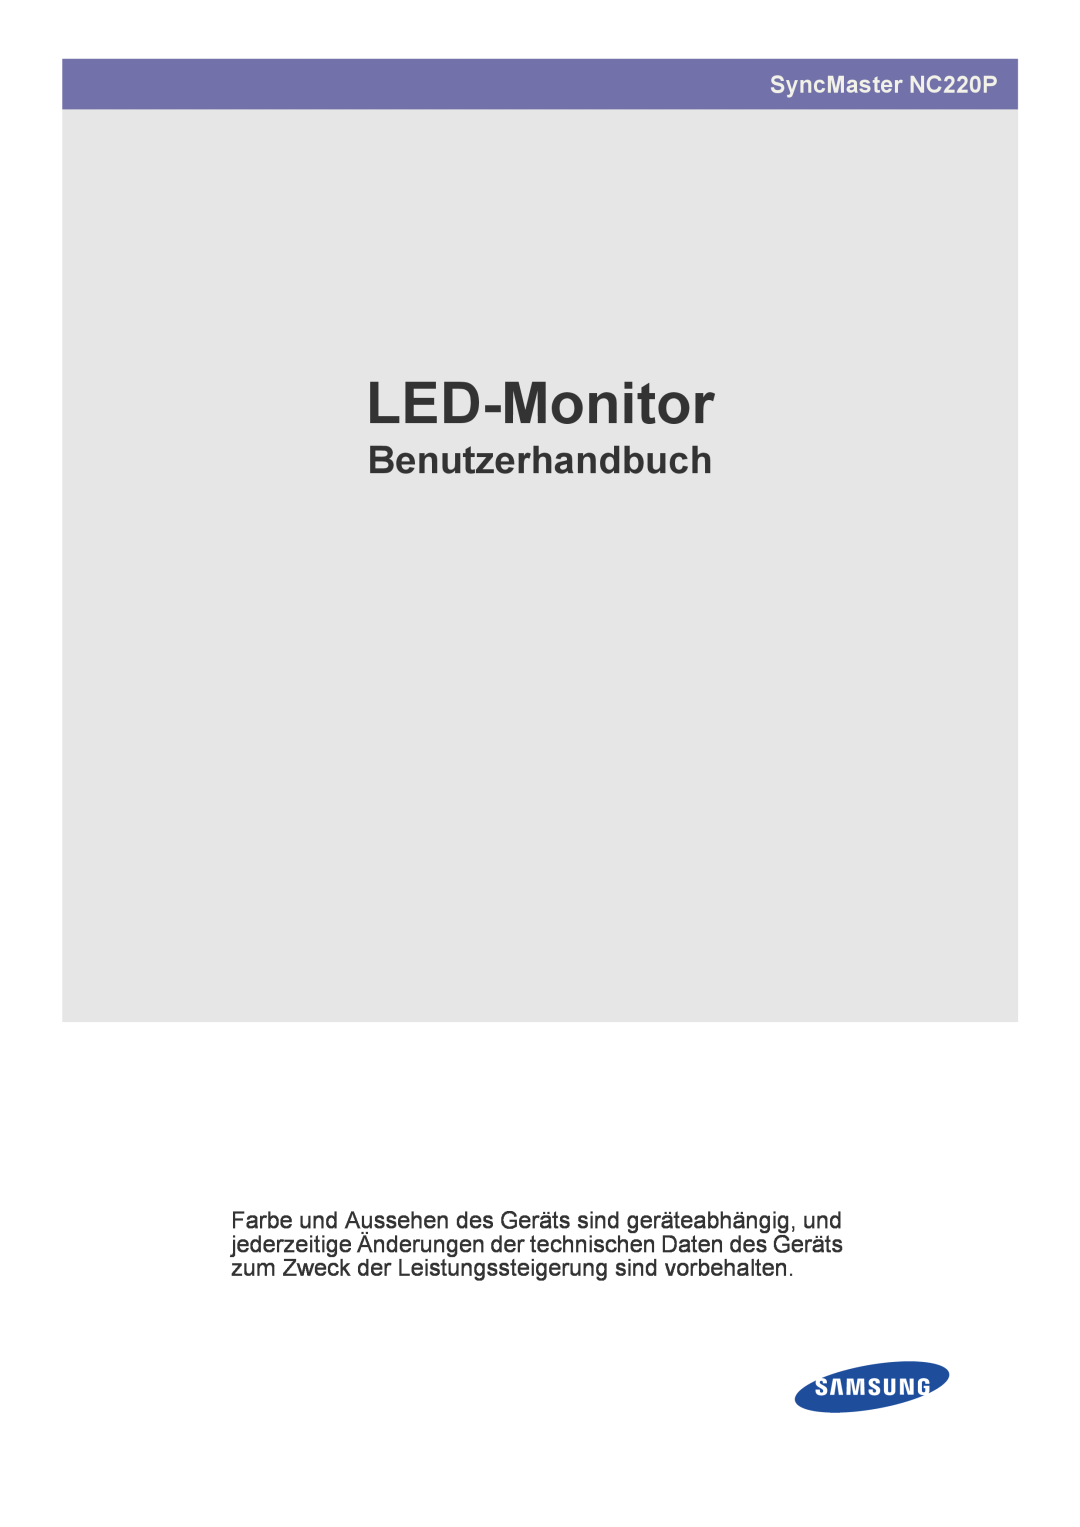 Samsung LF22NPBHBNP/EN manual LED Monitor, Brugervejledning, SyncMaster NC220P 